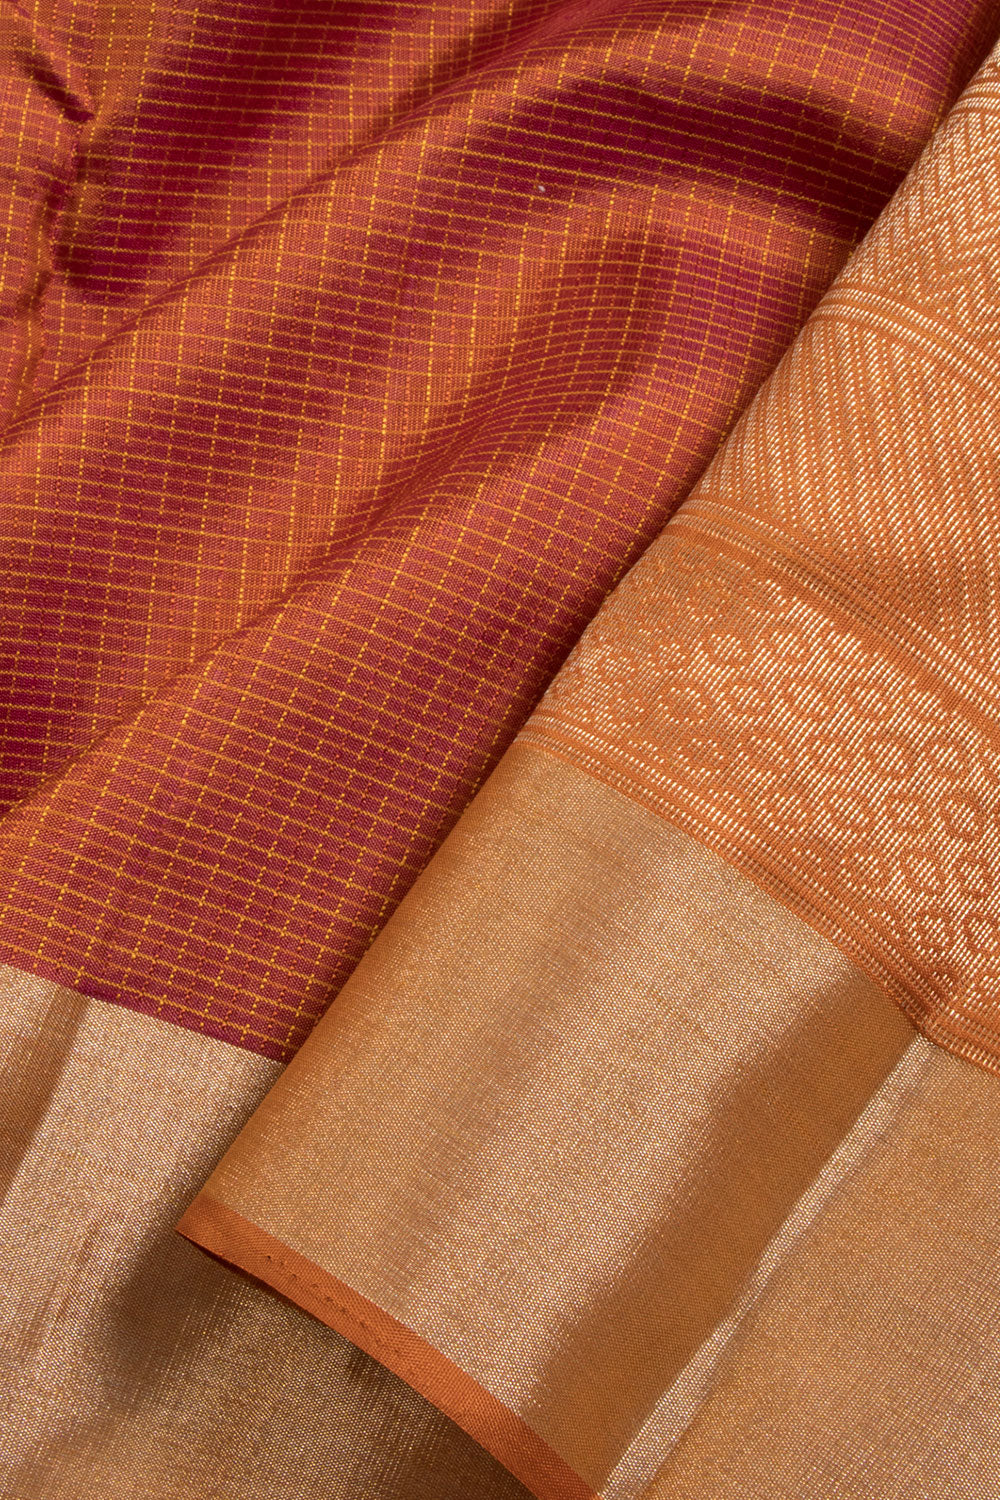 Brown Kanjivaram Soft Silk Saree 10069007 - Avishya